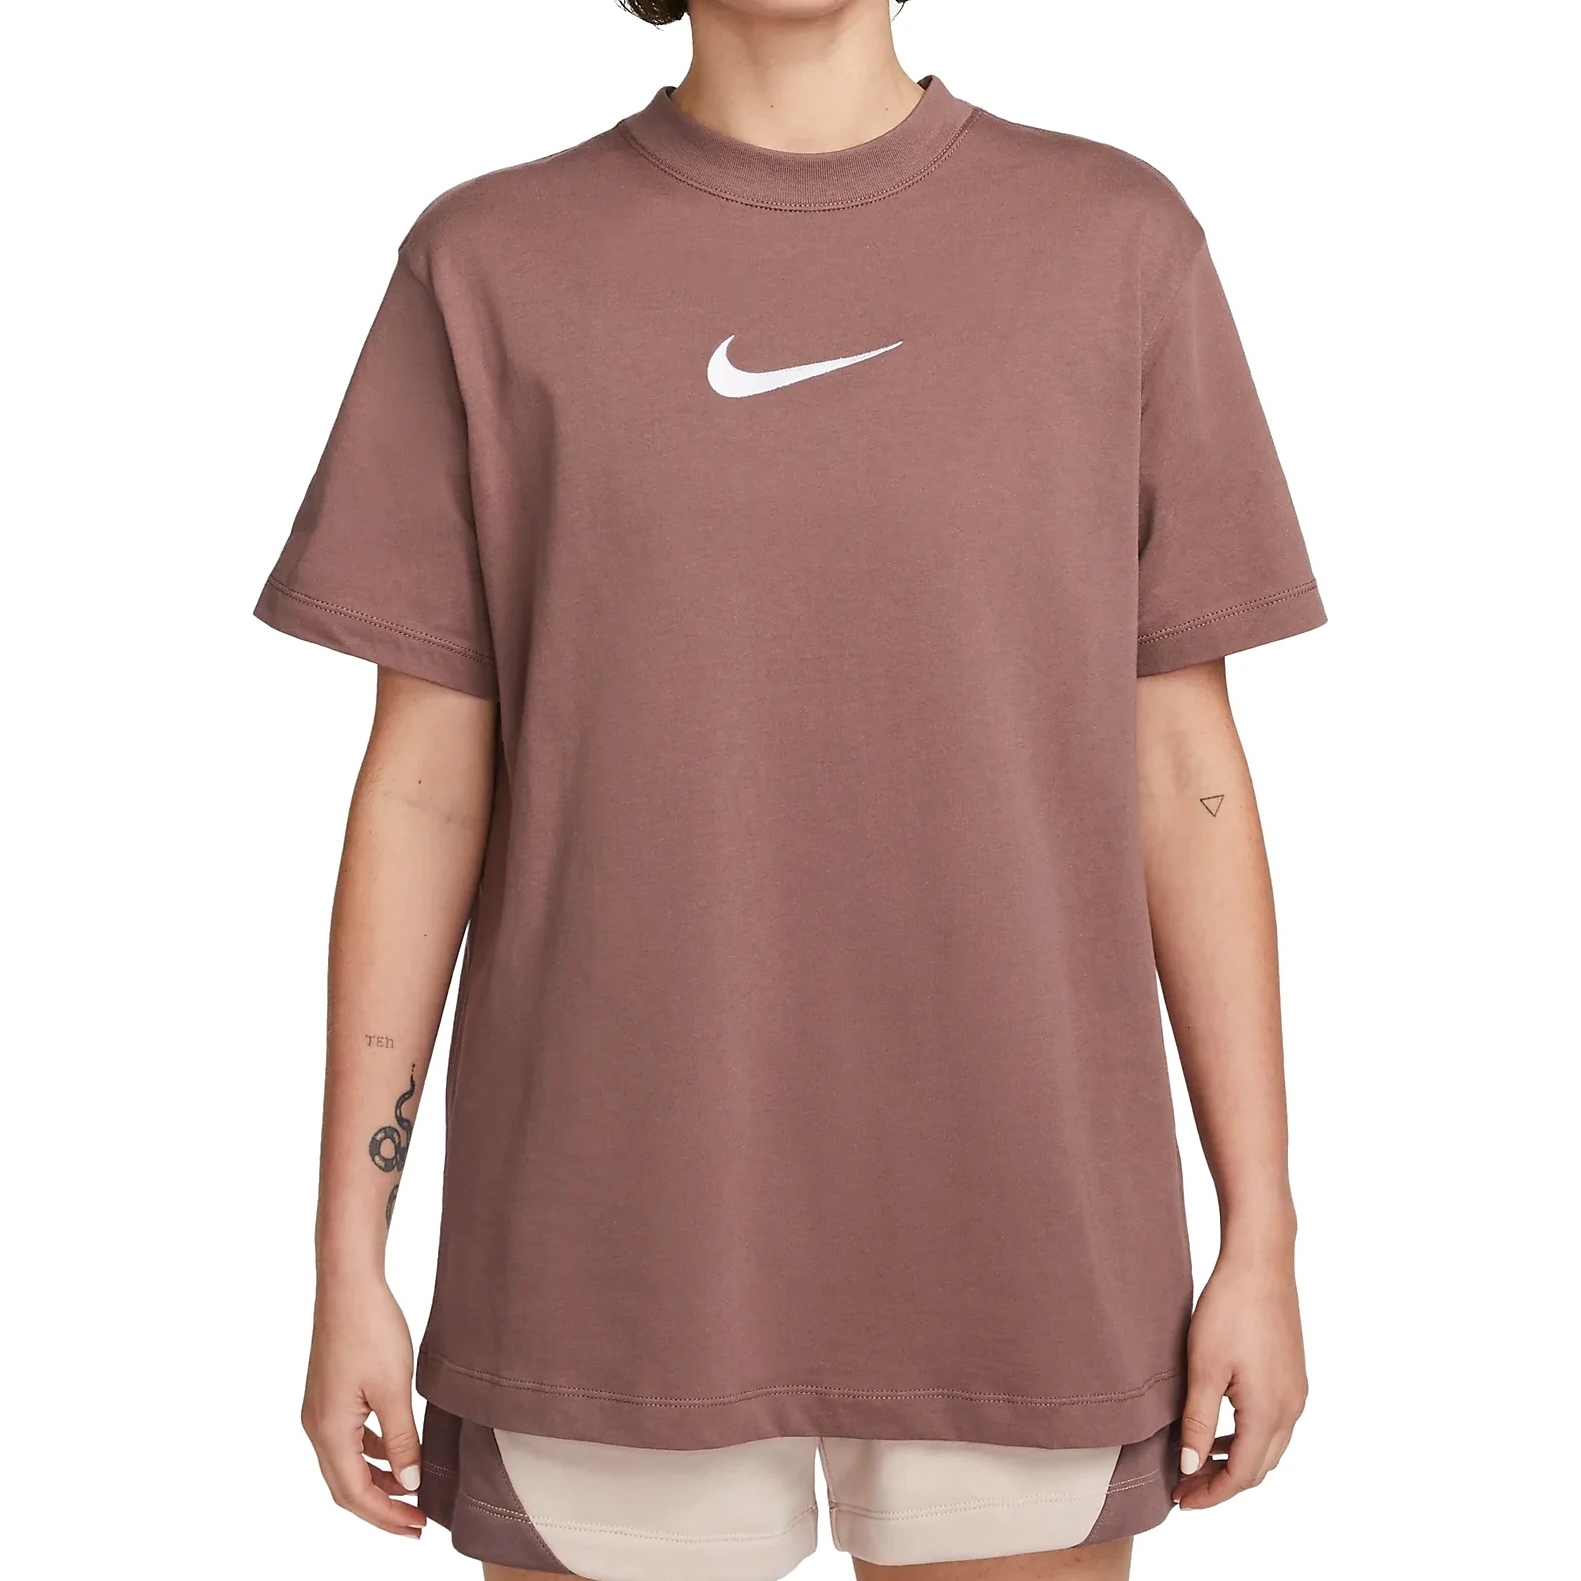 Produktbild von Nike Sportswear T-Shirt Damen - plum eclipse/white FD1129-291